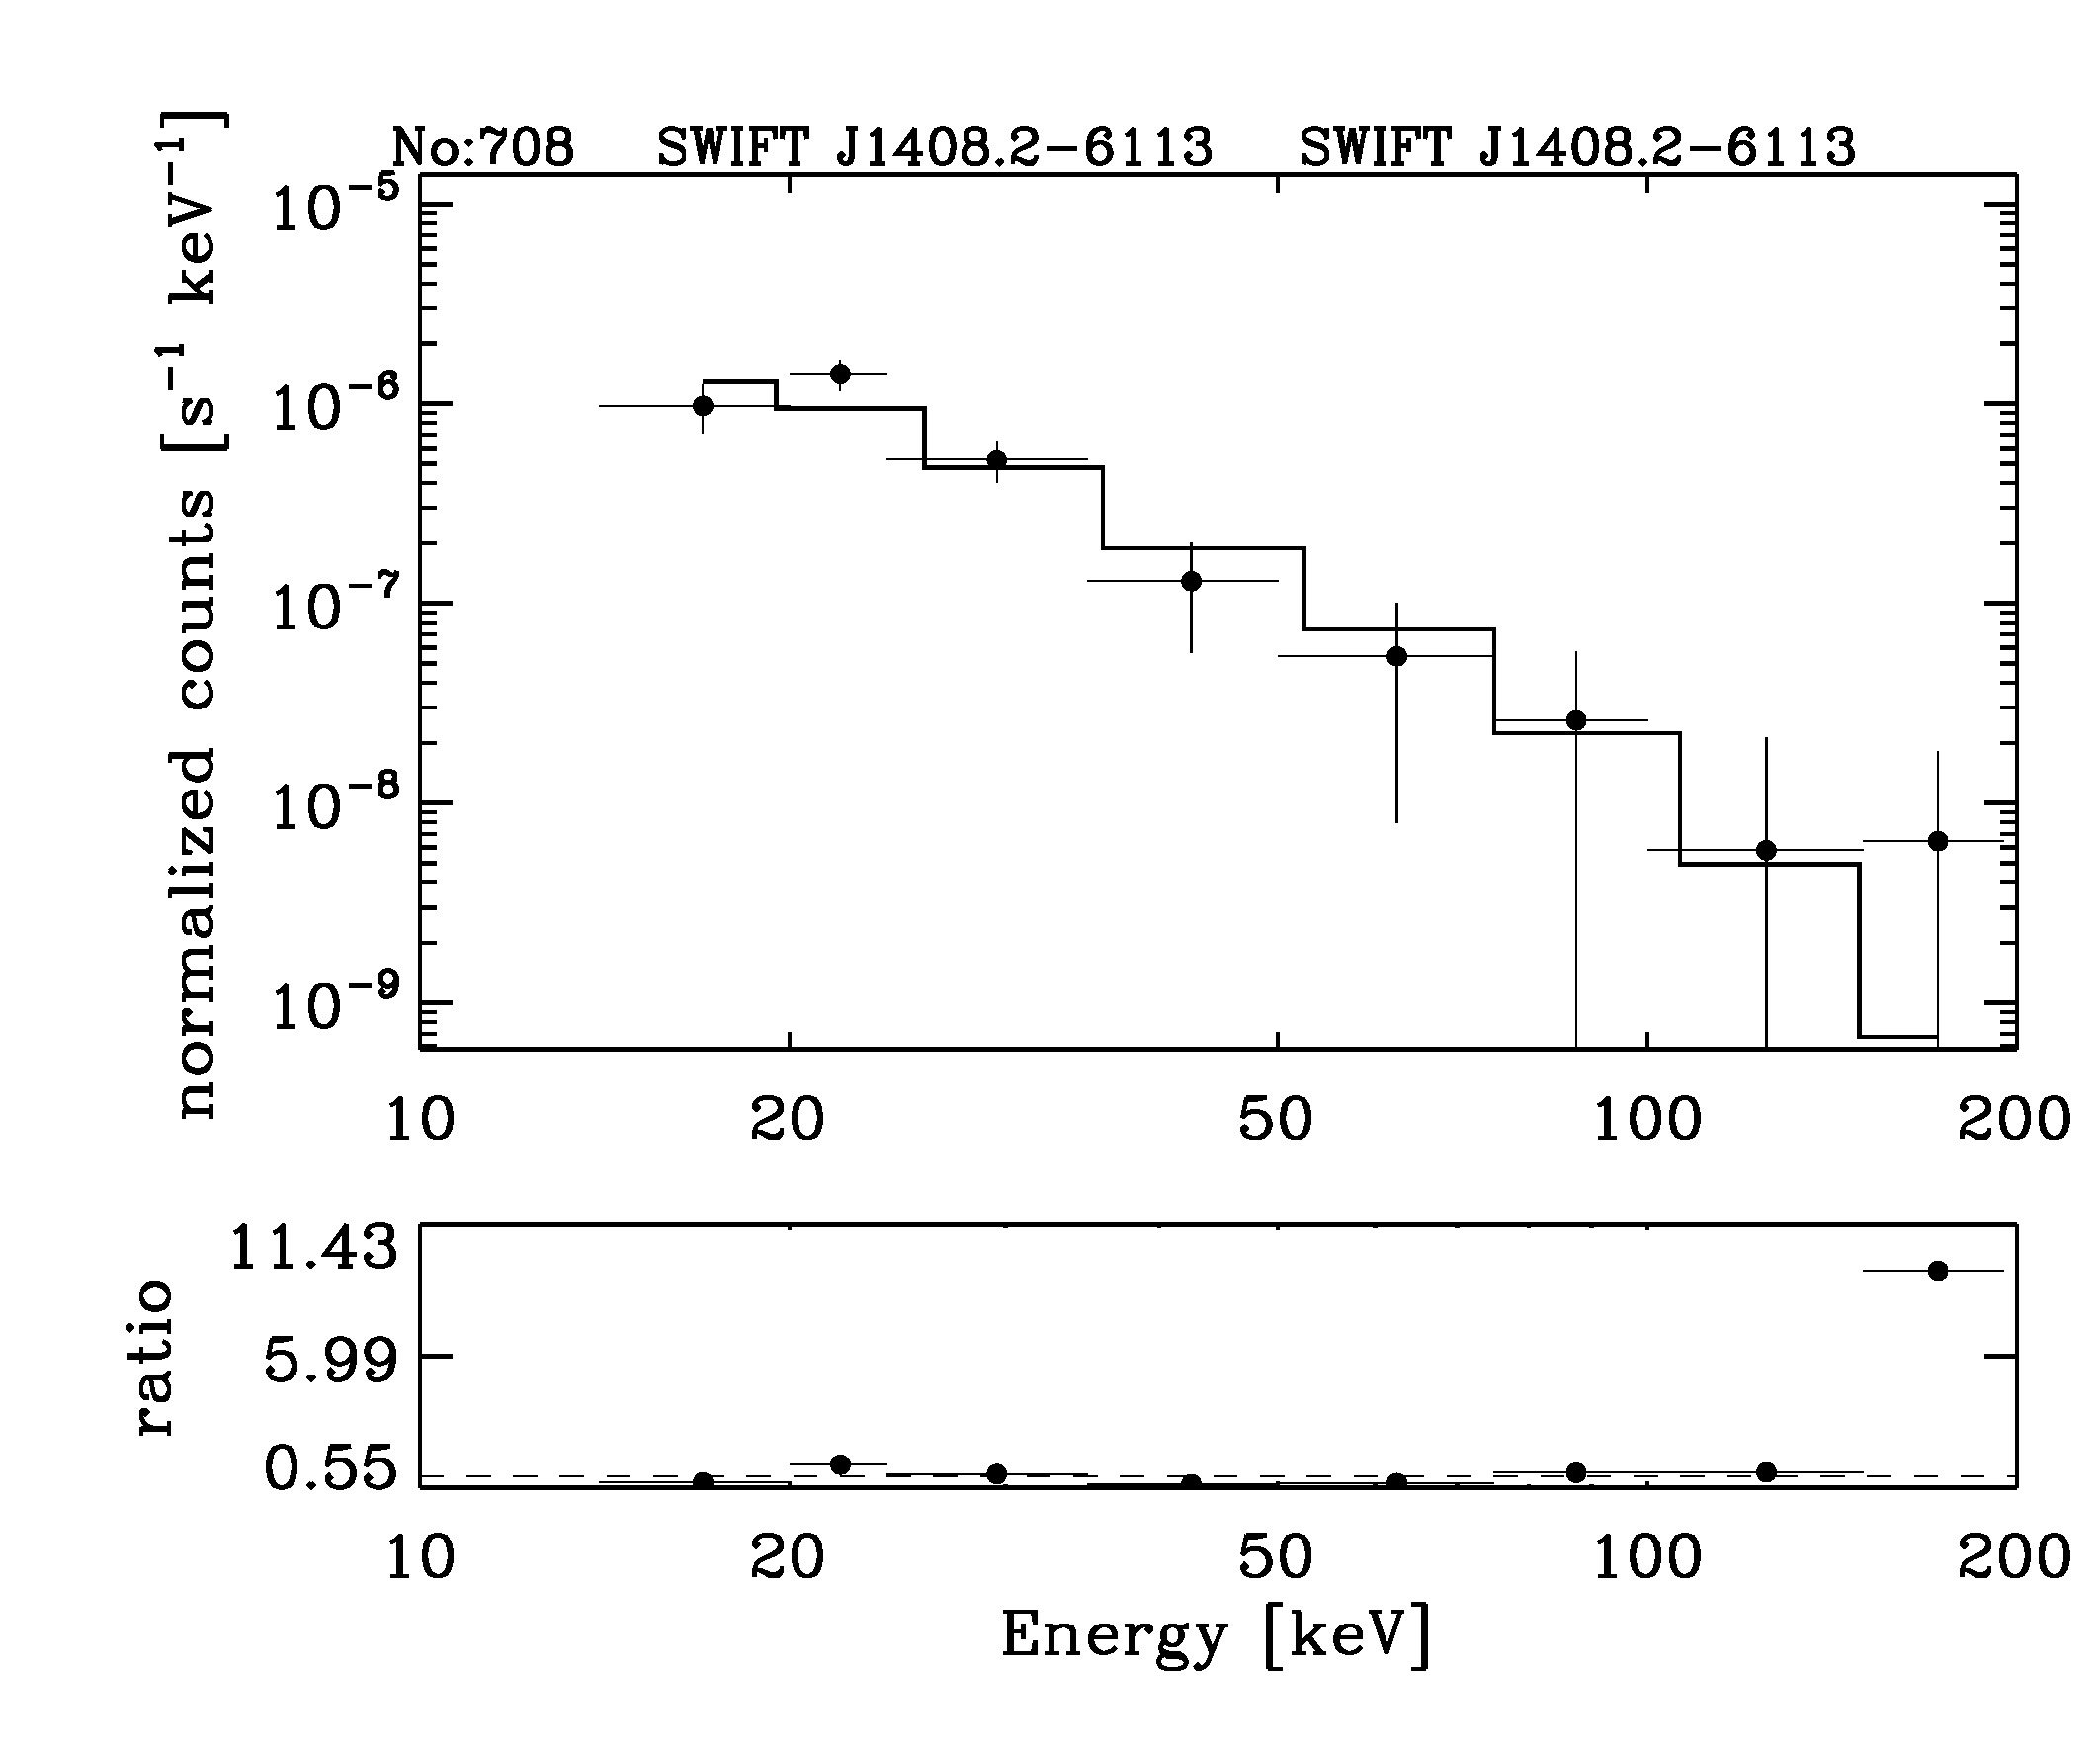 BAT Spectrum for SWIFT J1408.2-6113